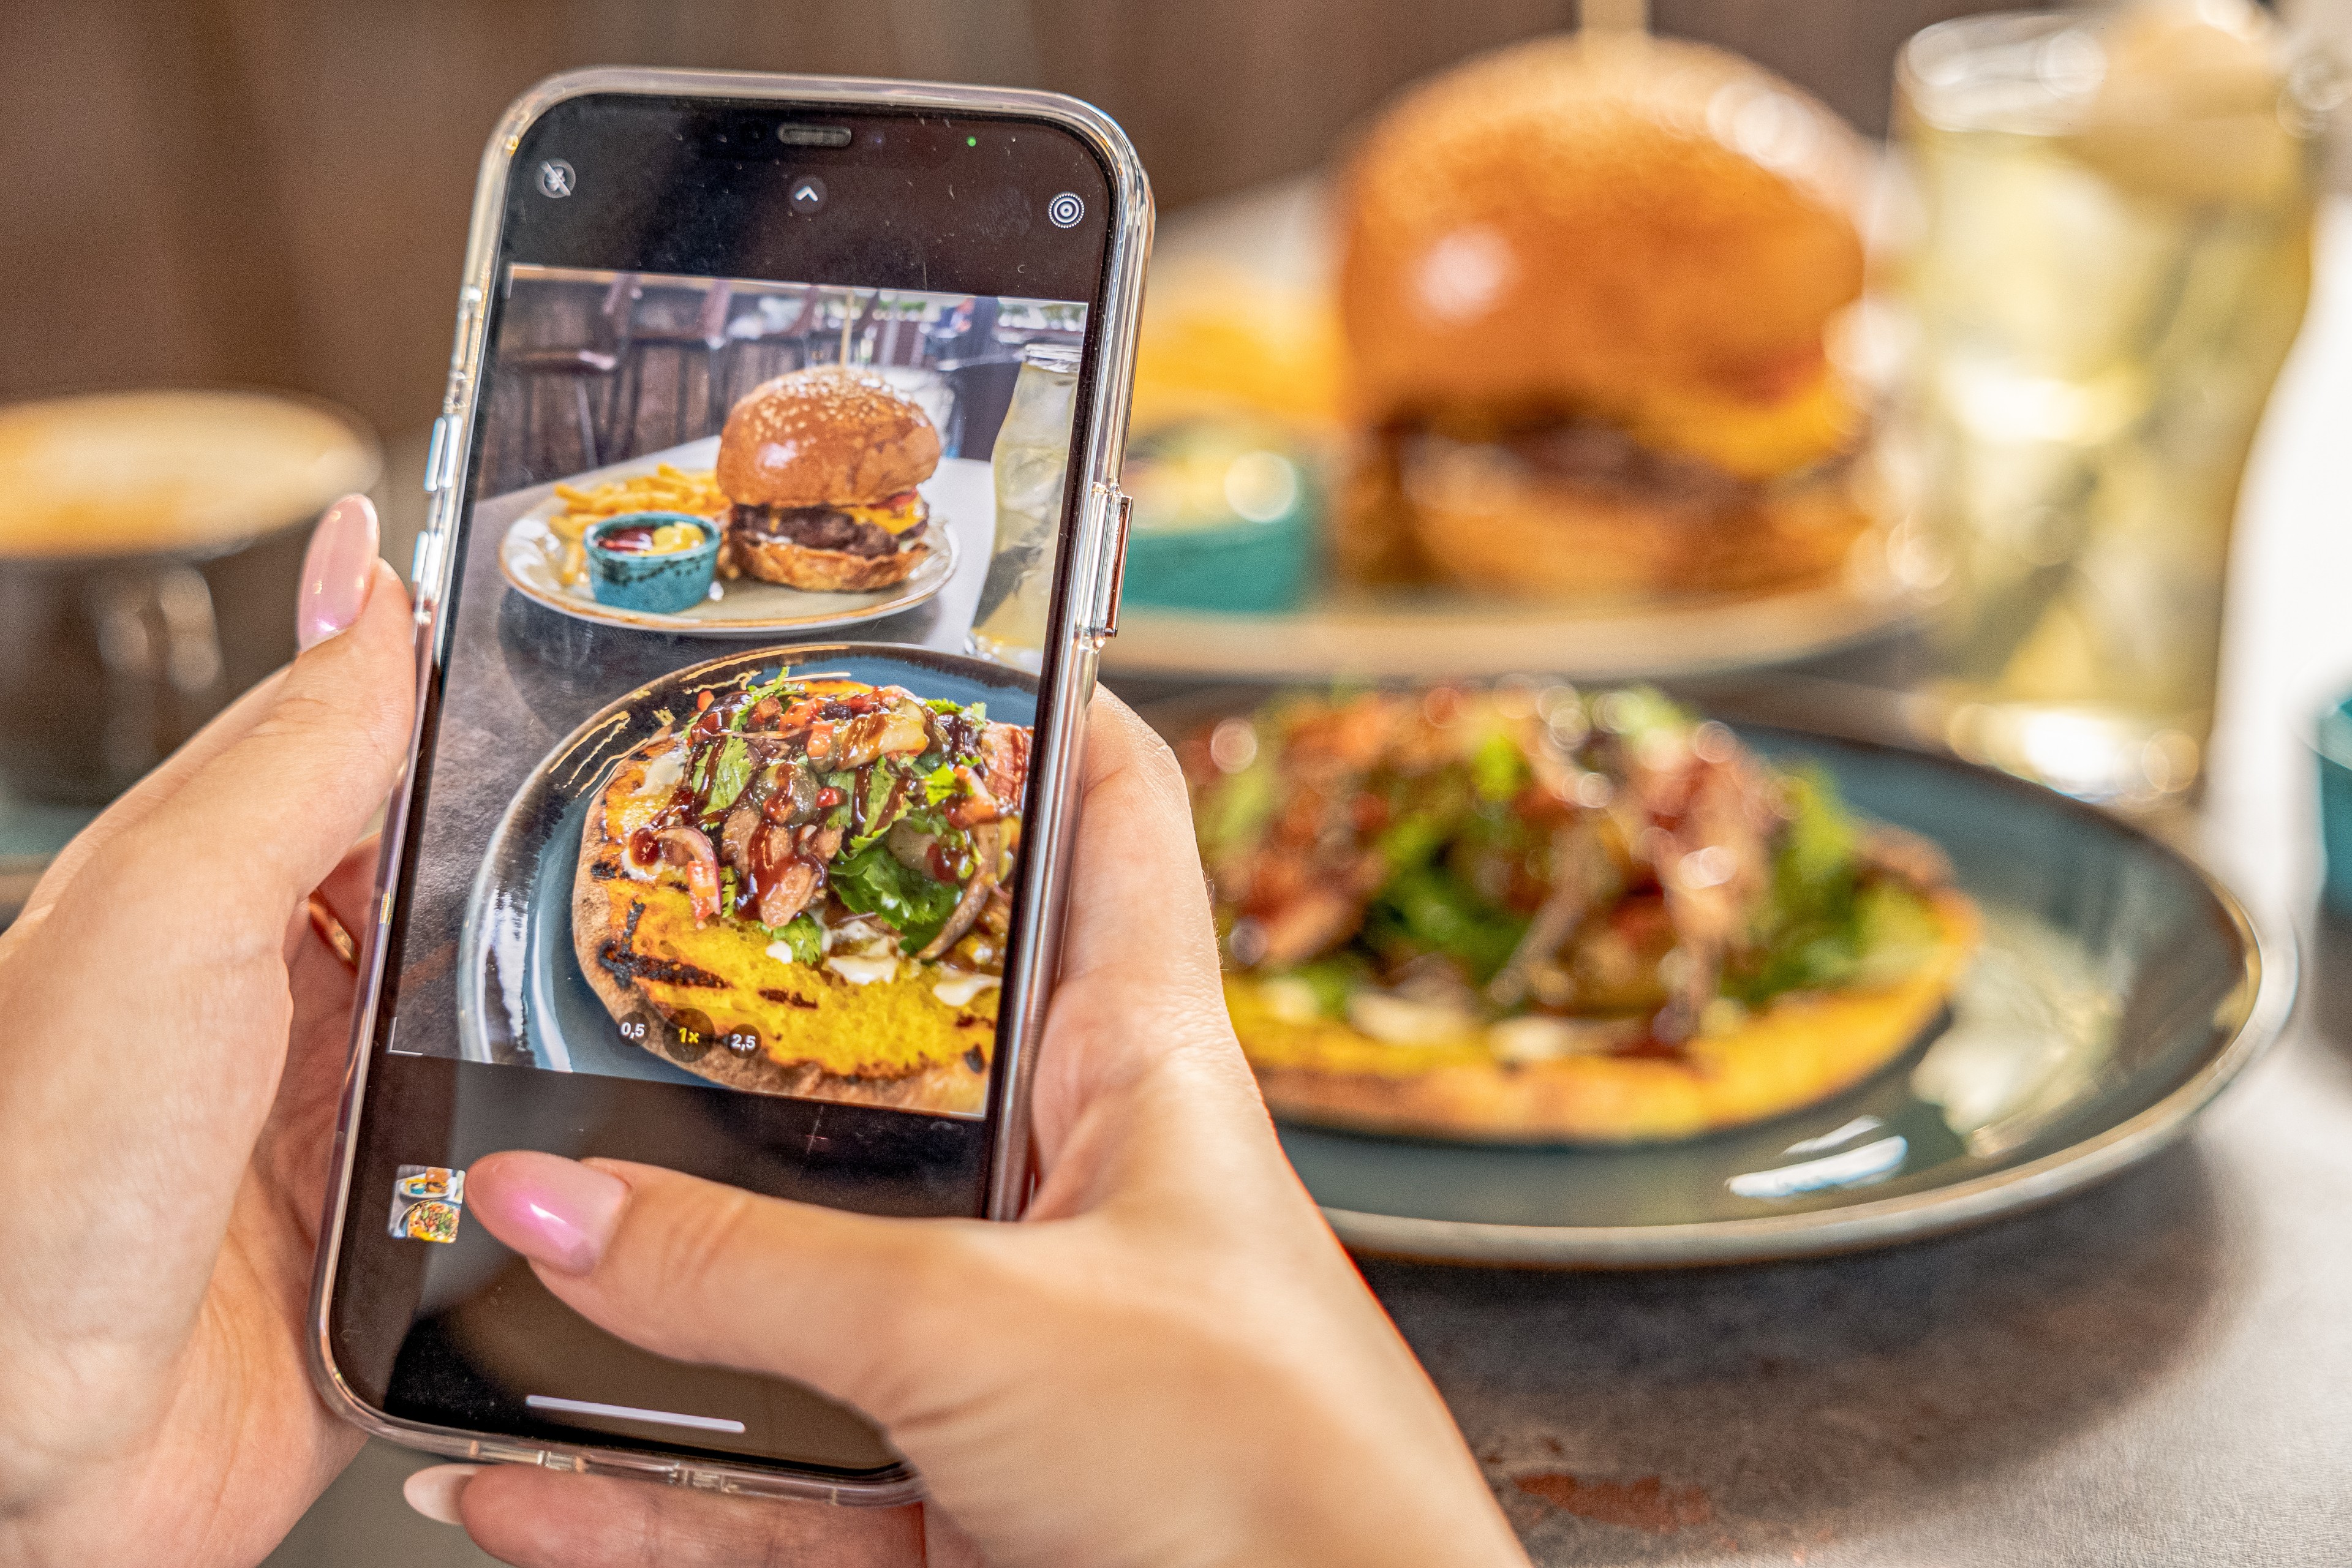 Regarder des images d'aliments sur Internet suffit-il à contrôler l'appétit et la consommation ? © oatawa, Adobe Stock